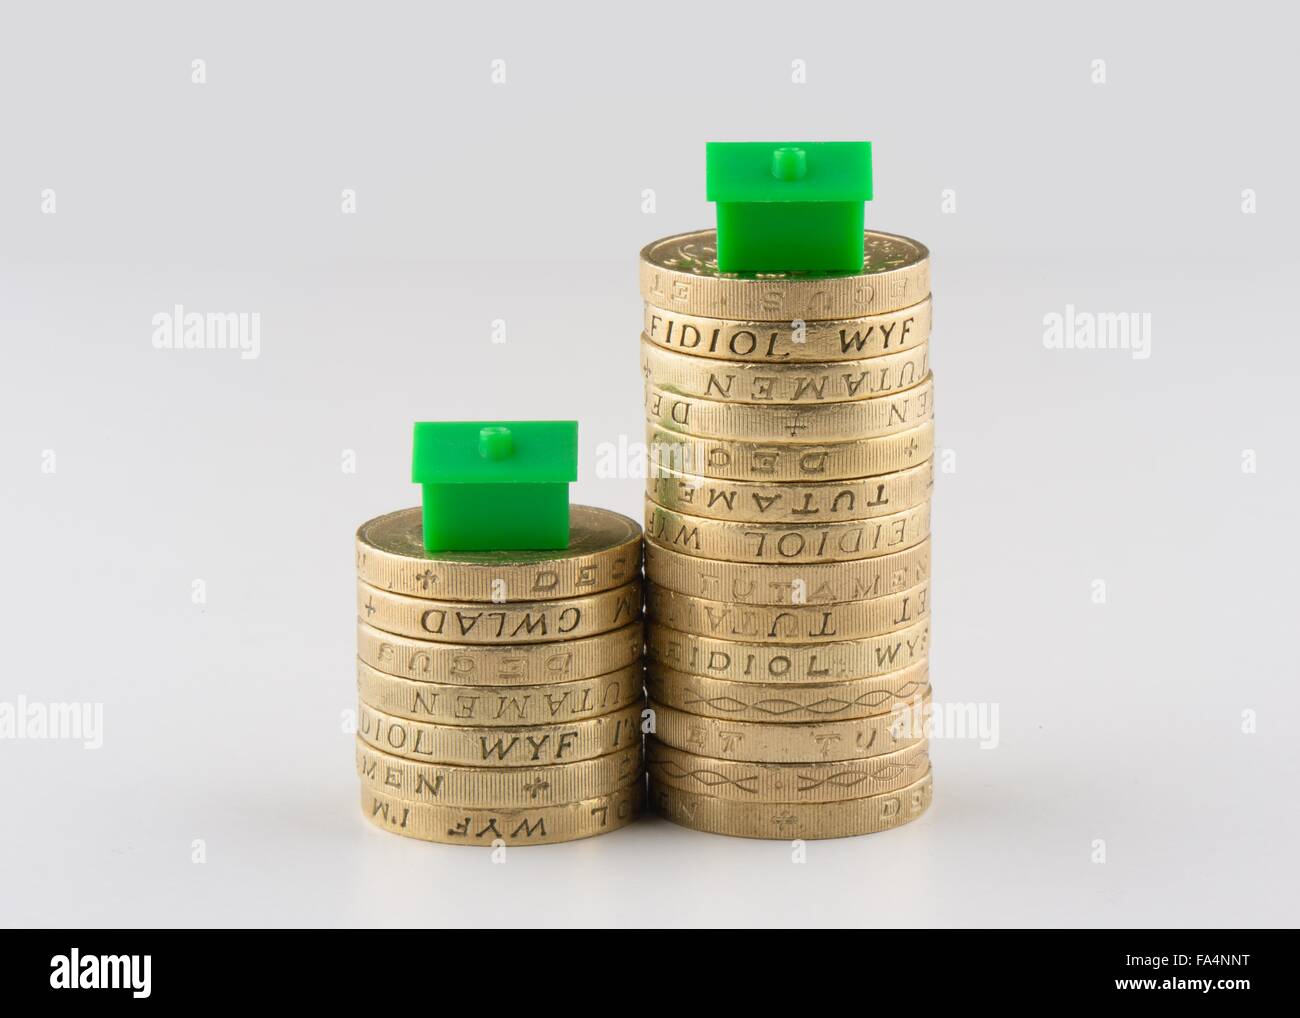 Due pile di UK pound monete con case in plastica sulla parte superiore suggestivo di ridimensionamento o il mercato immobiliare. Foto Stock